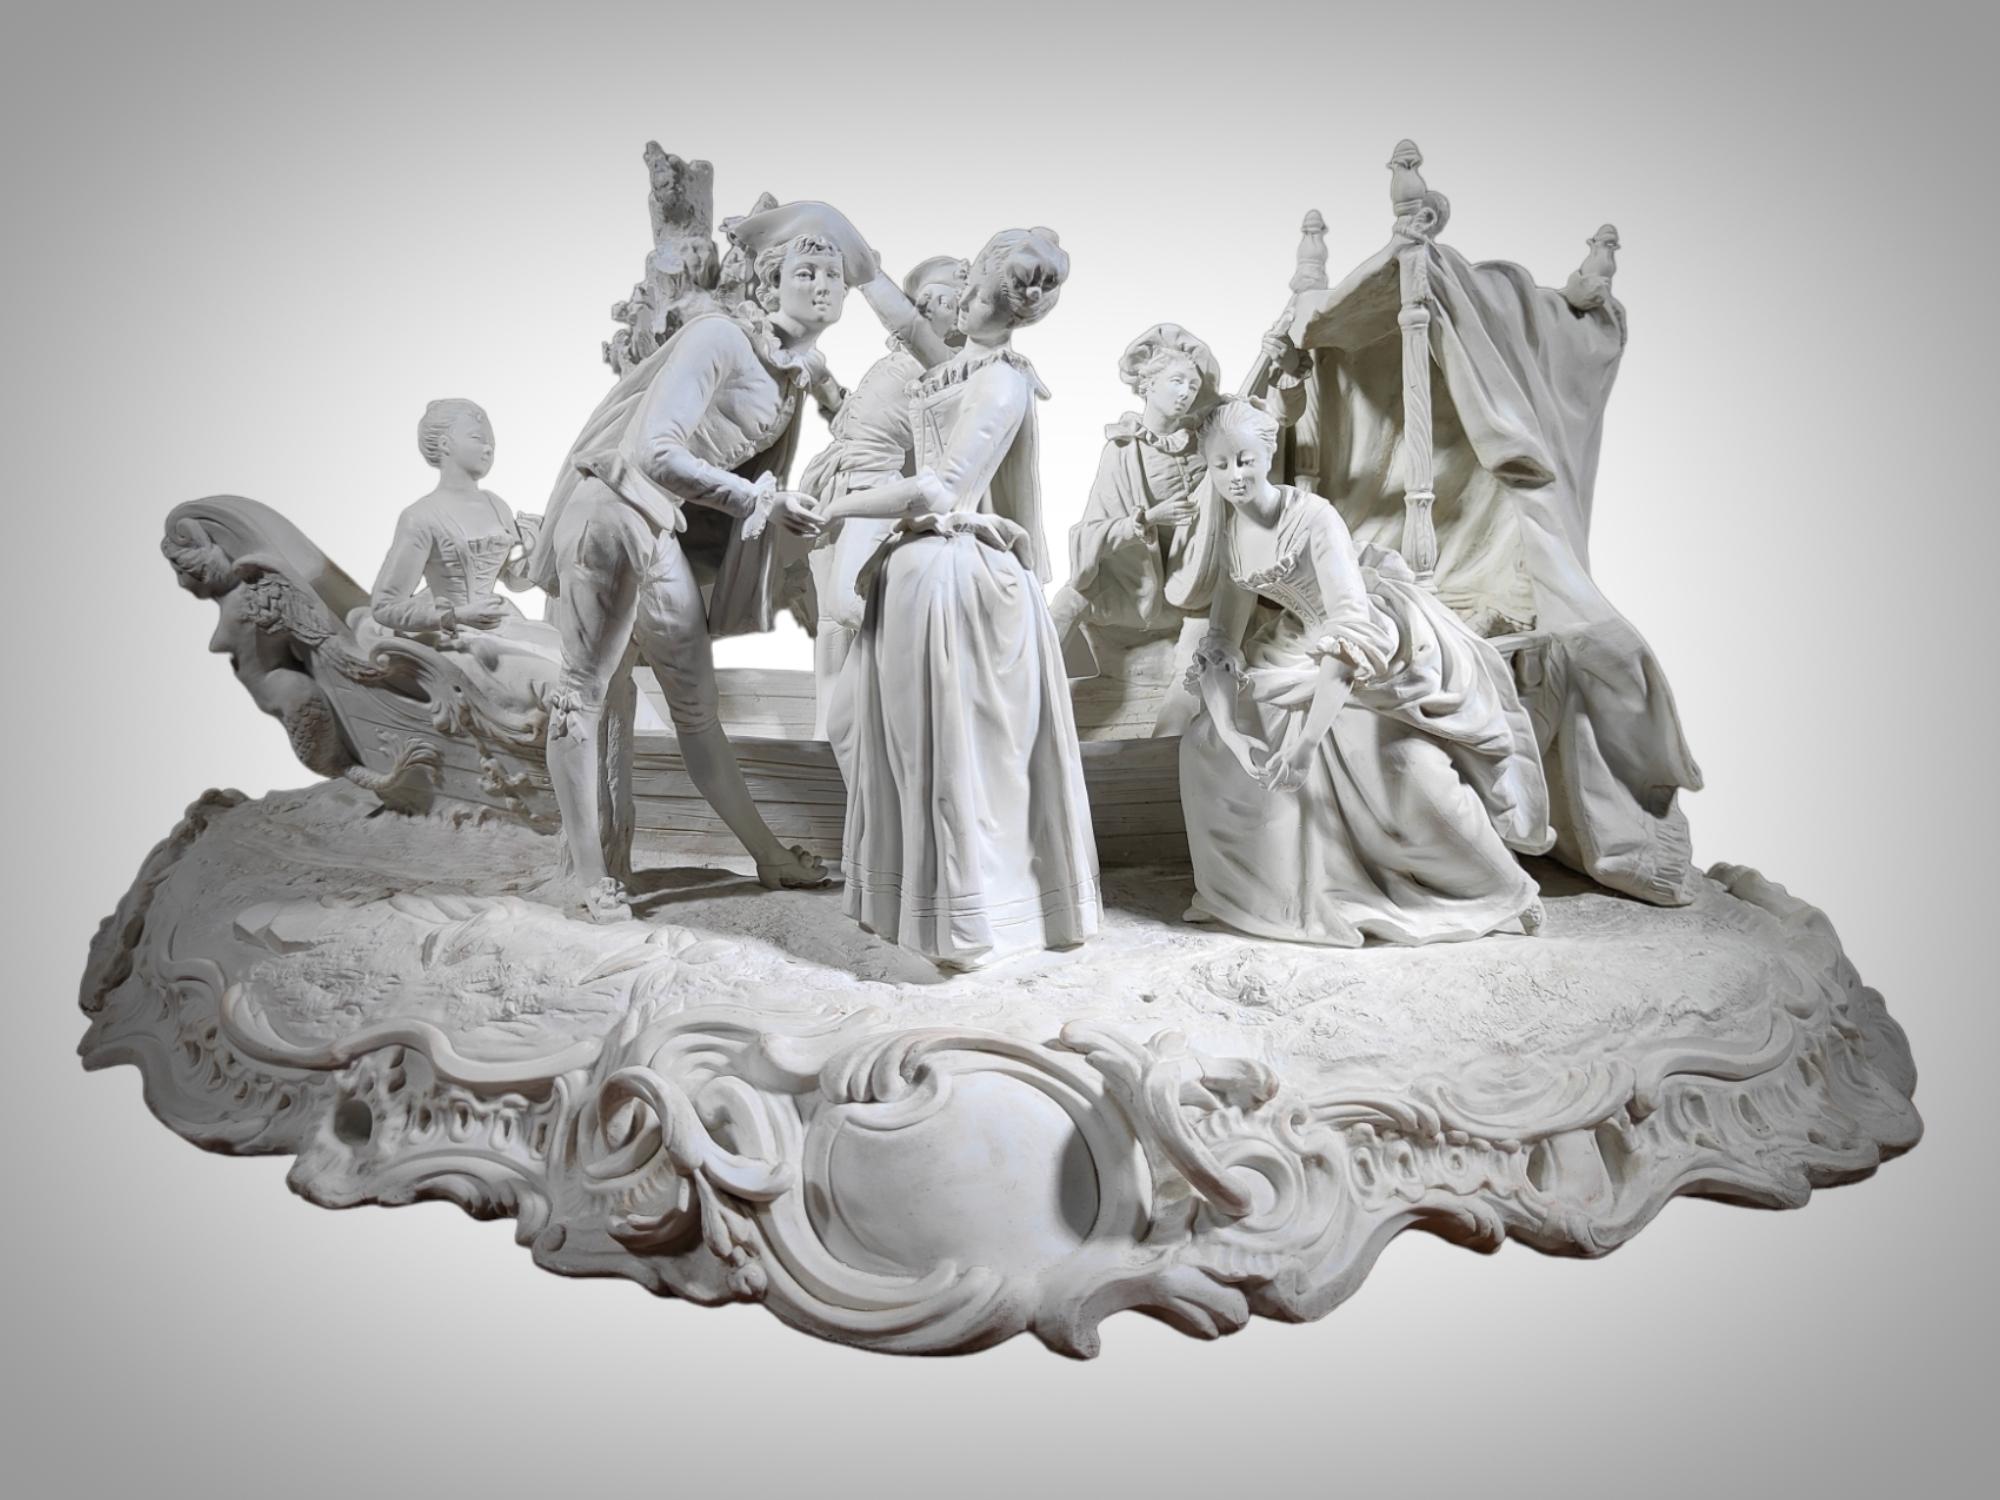 Monumentale Gruppe aus Sèvres Porzellan Signiert:Boucher
MONUMENTALE GRUPPE IN SÈVRES PORZELLAN SIGNIERT SPEKTAKULÄRE GRUPPE IN FRANZÖSISCH PORZELLAN BISKUIT AUS DEM HAUS VON SÈVRES VOM KÜNSTLER UNTERZEICHNET XIX JAHRHUNDERT, IN SEHR GUTEM ZUSTAND